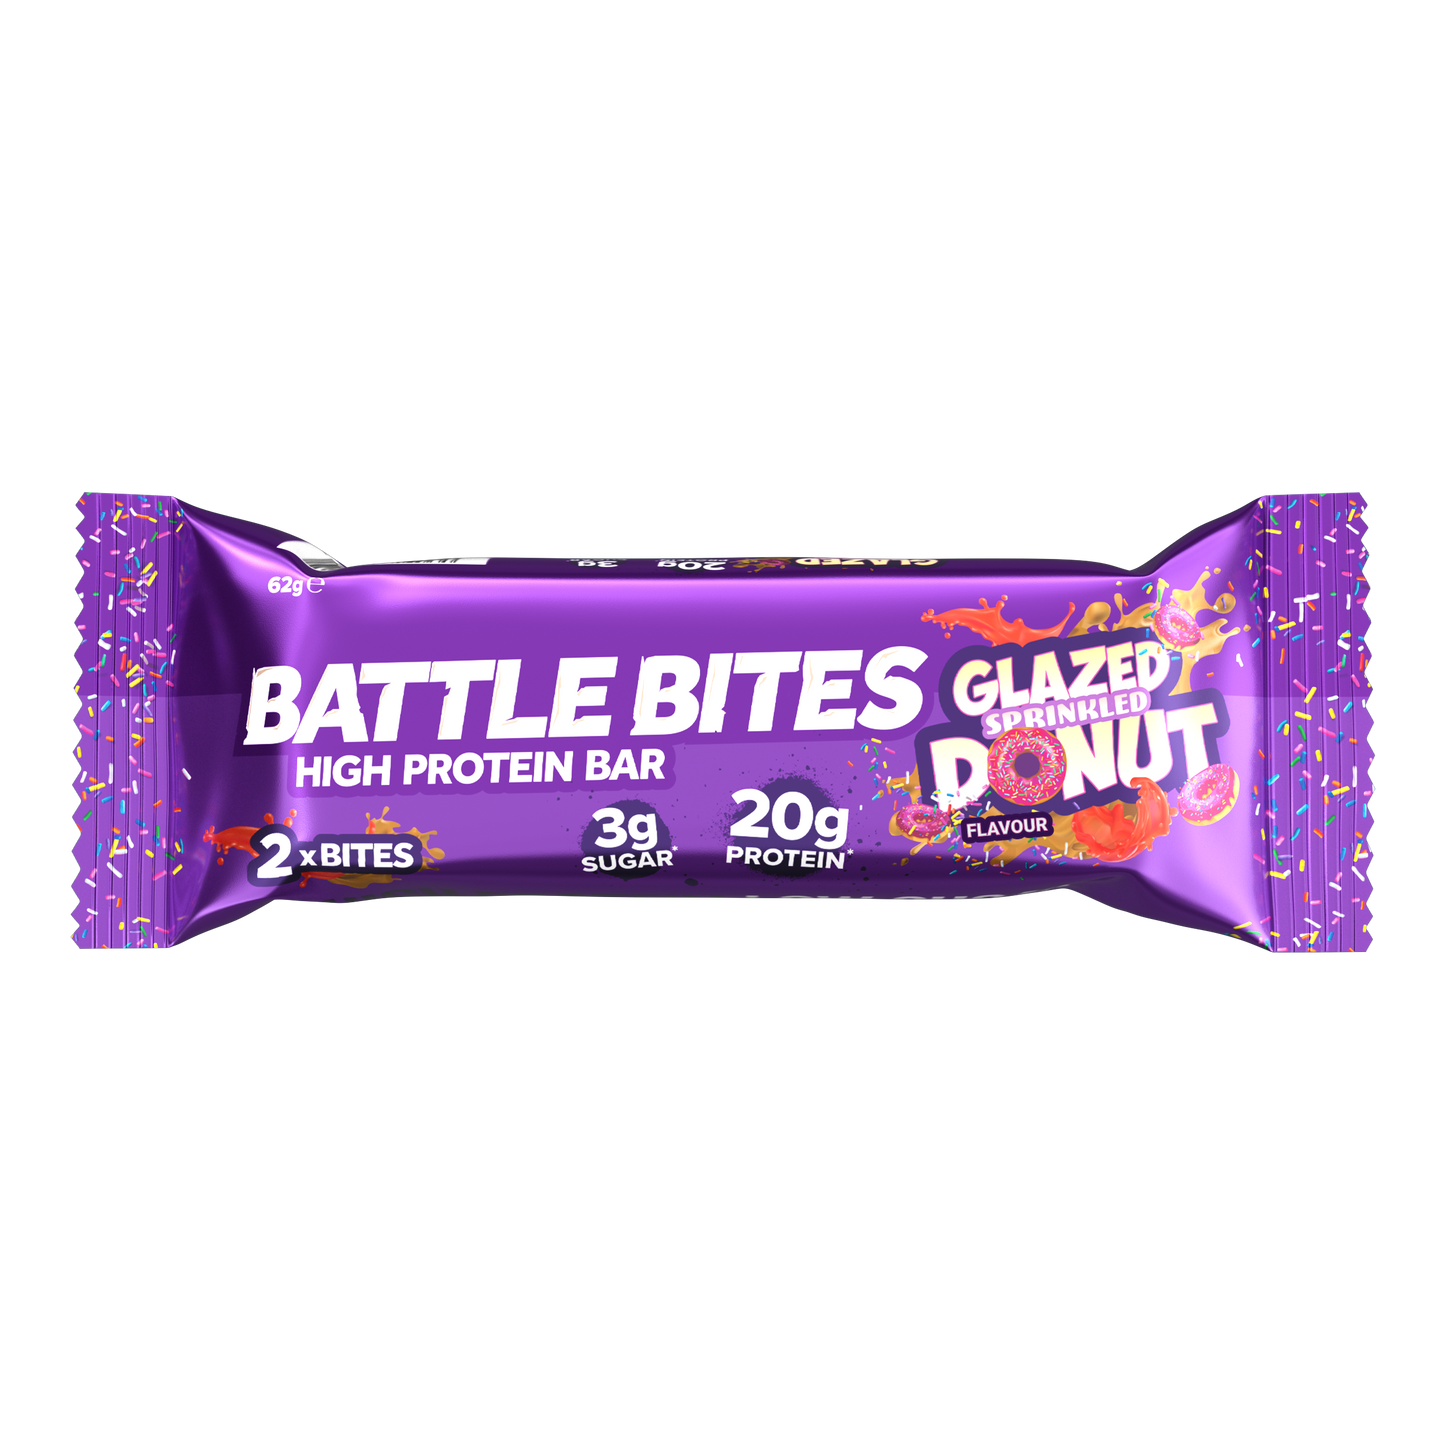 Battle Bites Glazed Sprinkled Donut 62g x 12